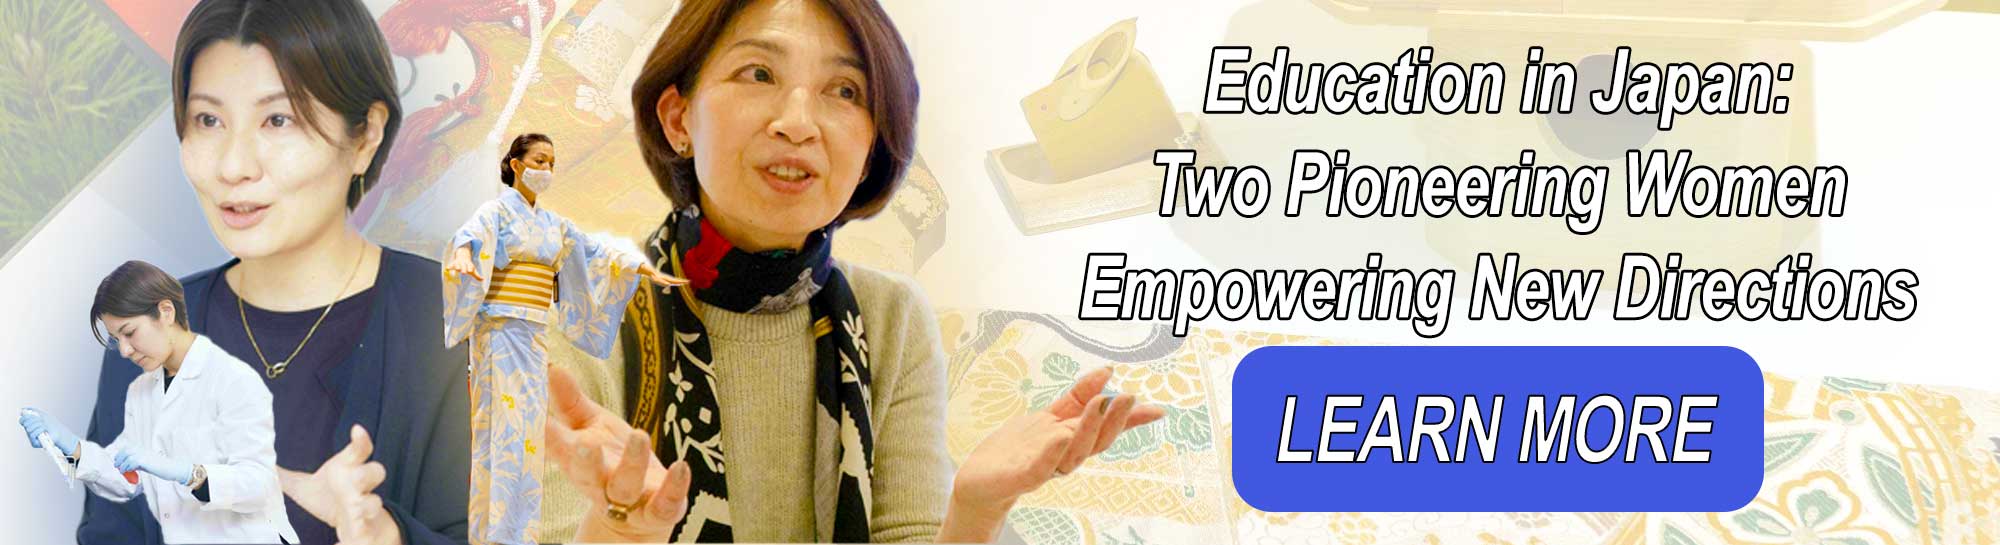 日本教育：新しい方向性を提示する2人の先駆的な女性